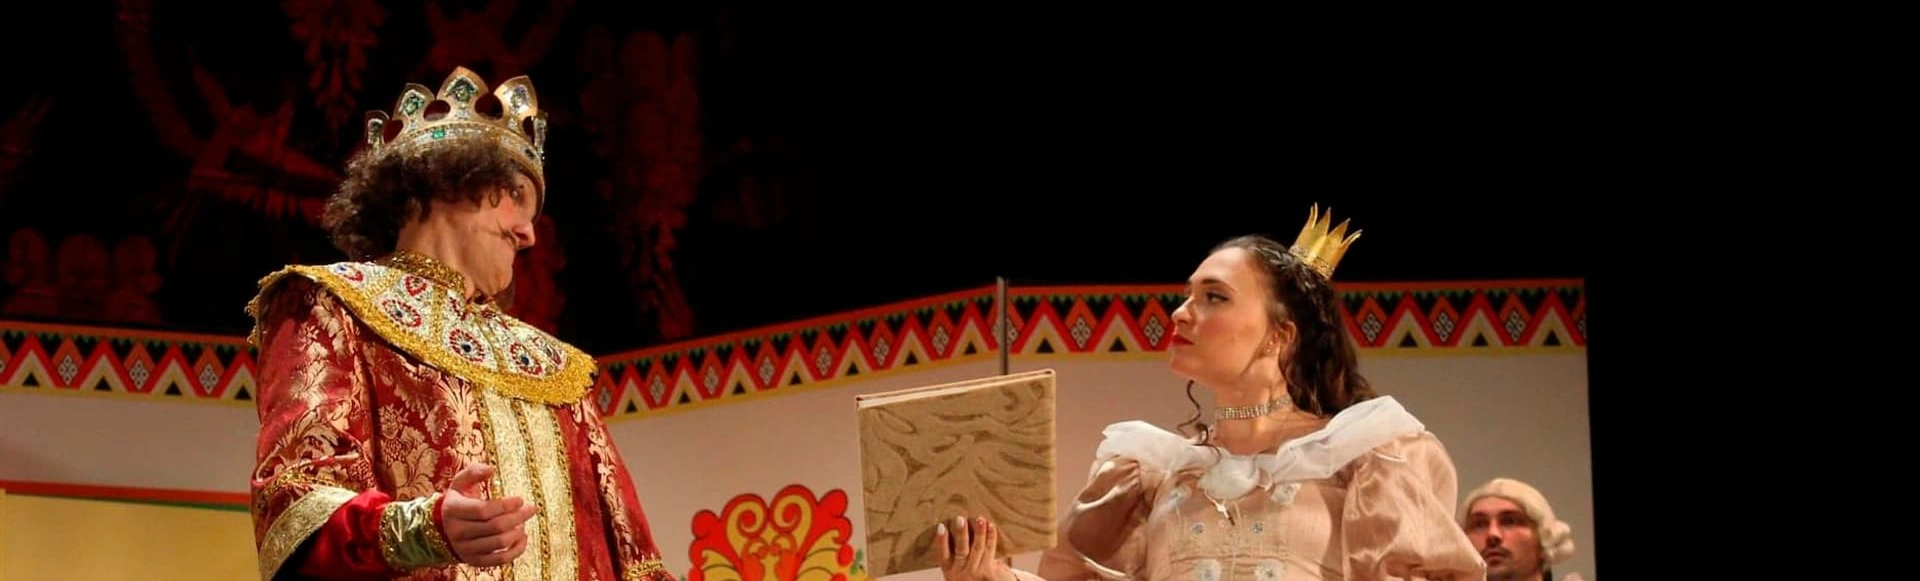 В «Театре Терезы Дуровой» покажут спектакль «Царевна Несмеяна»
